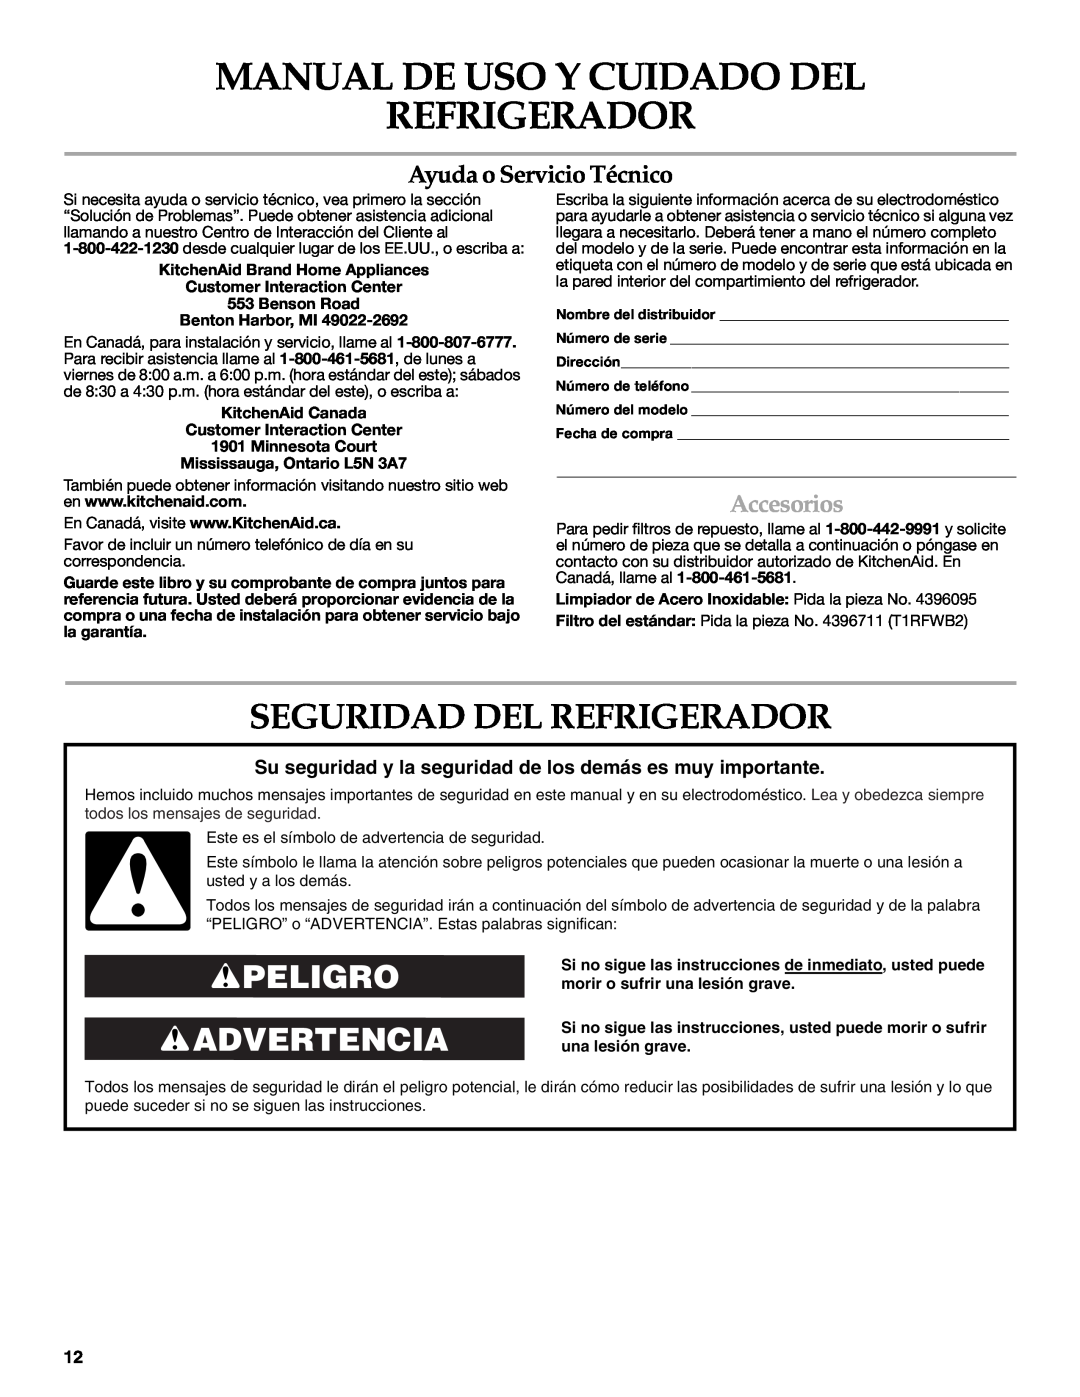 KitchenAid KSCS25INWH00 warranty Manual De Uso Y Cuidado Del Refrigerador, Seguridad Del Refrigerador, Peligro Advertencia 